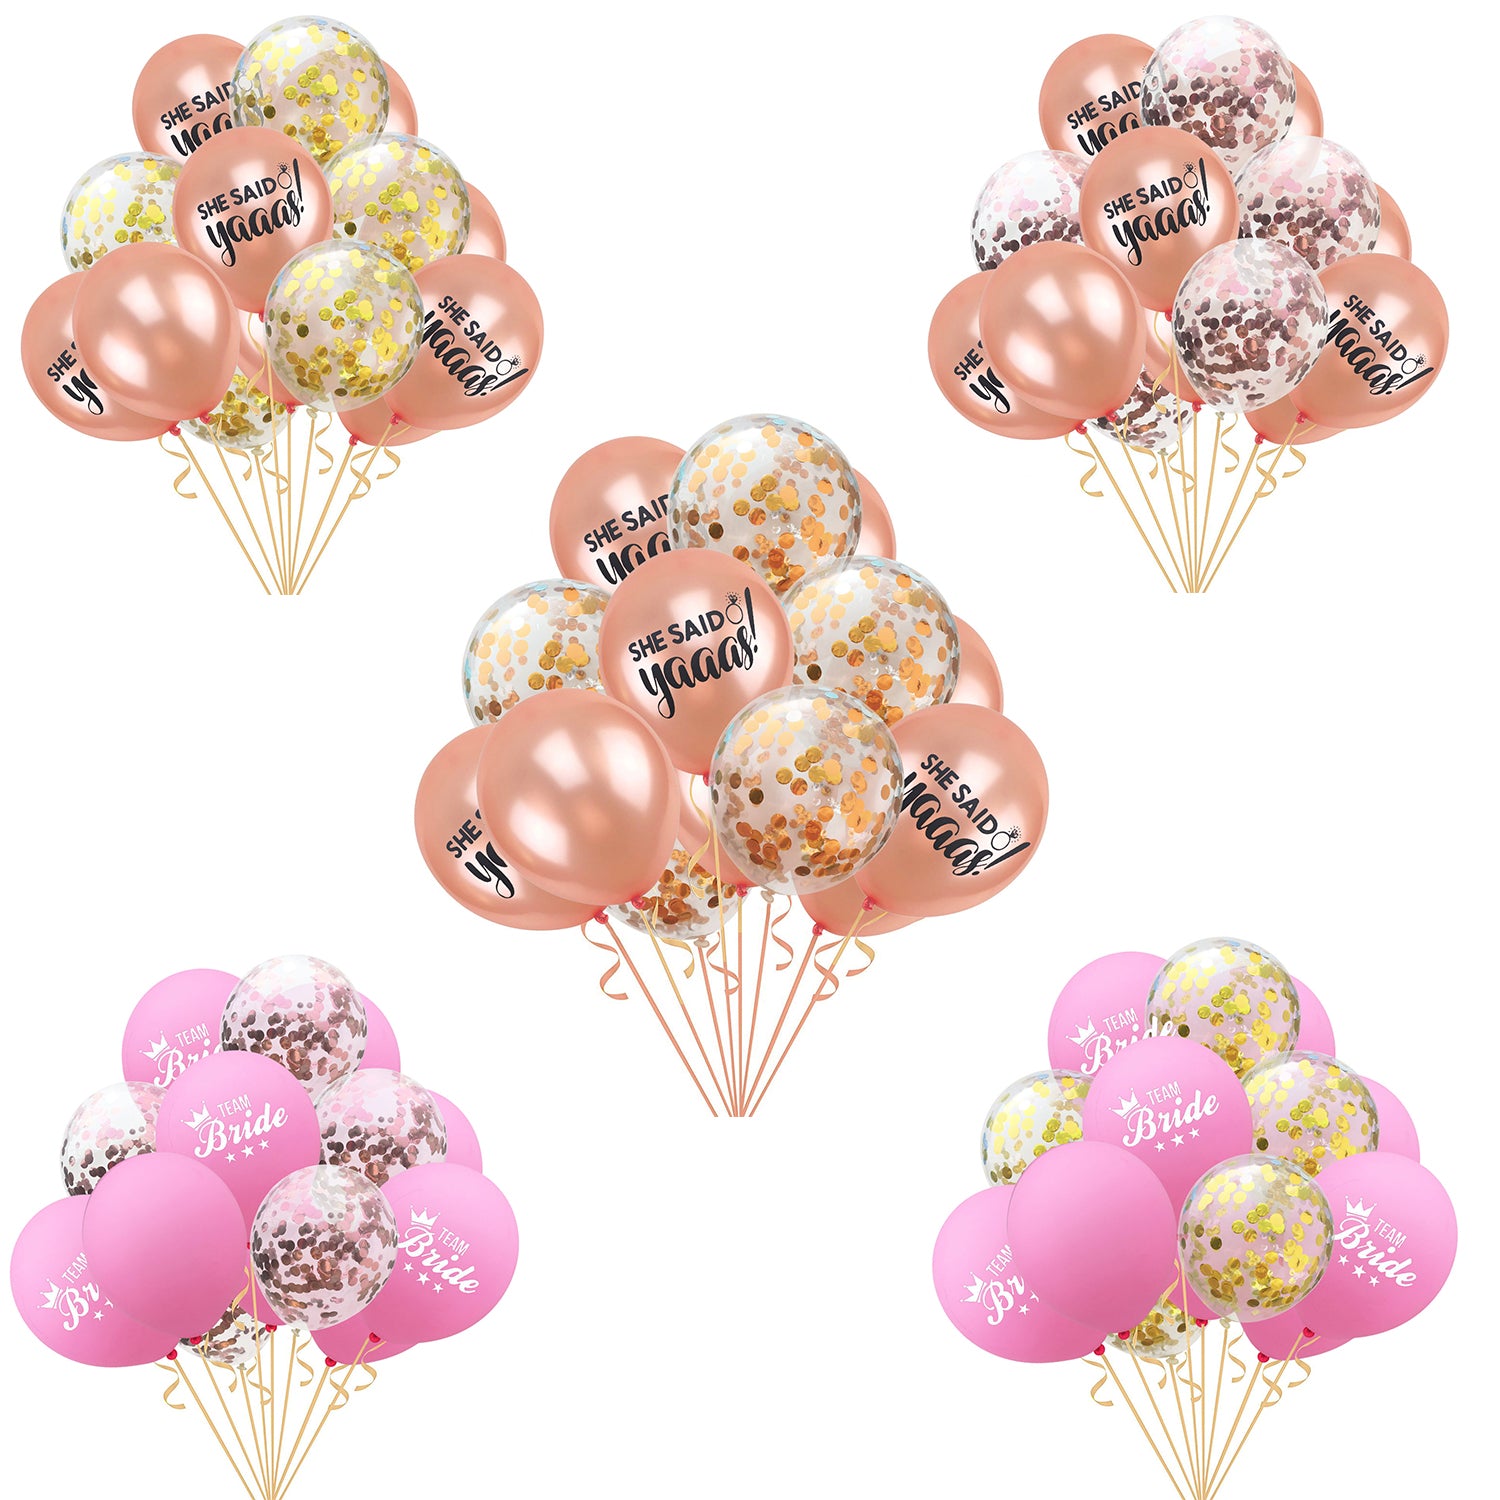 Balon 12 Inci, model Confetti, Balon Decoratiune pentru Nunta, Petrecere